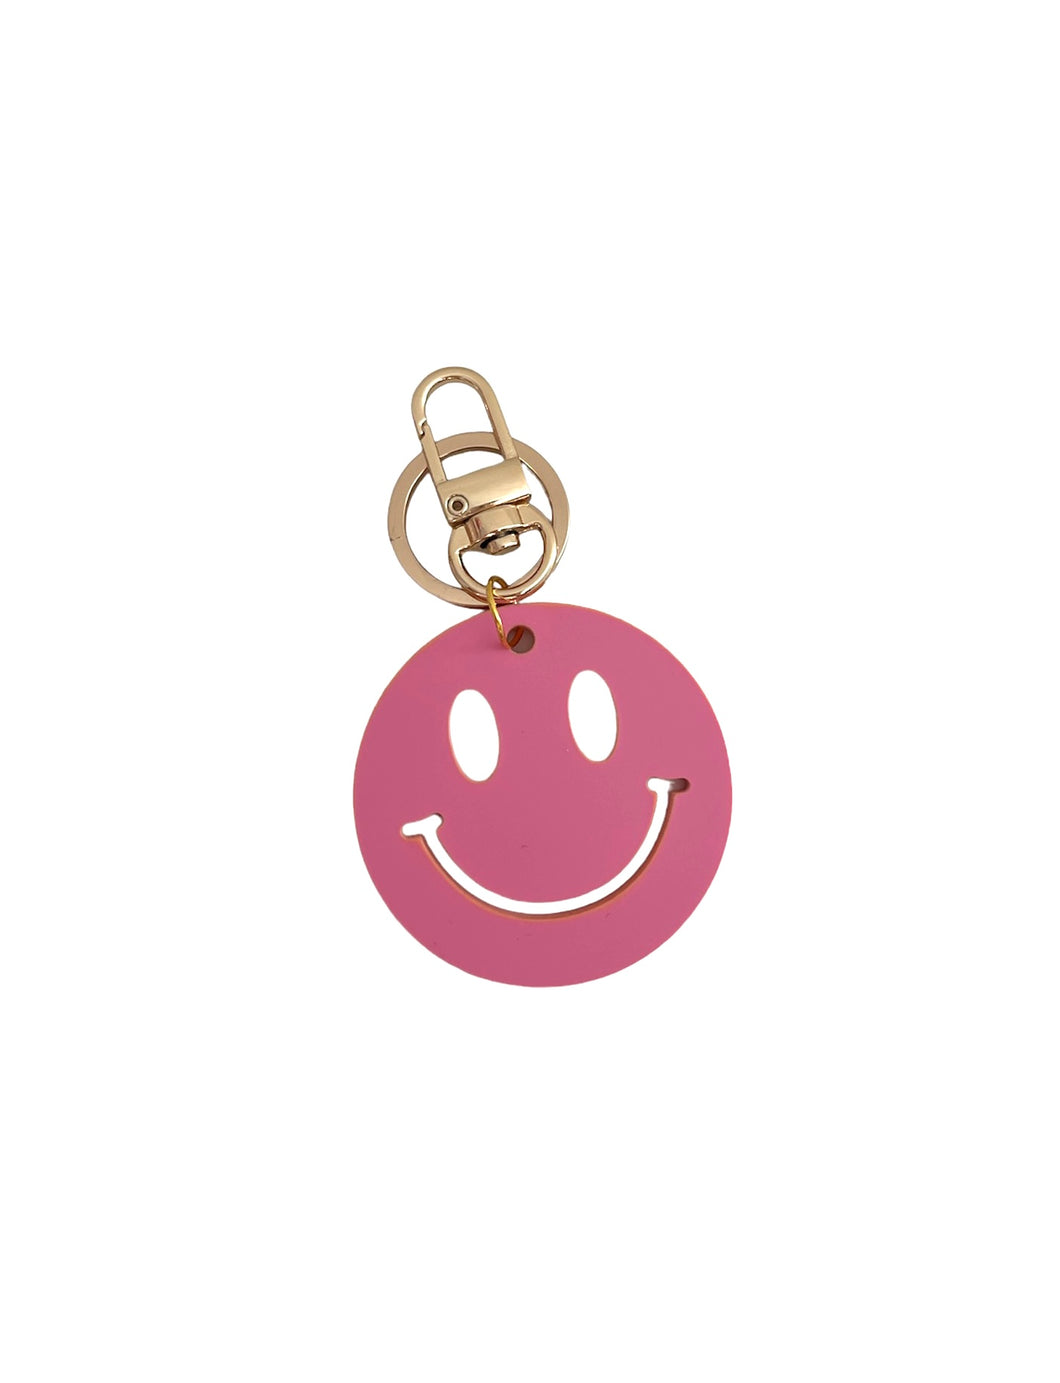 Mitylene Smiley Keychain in Bubblegum Pink